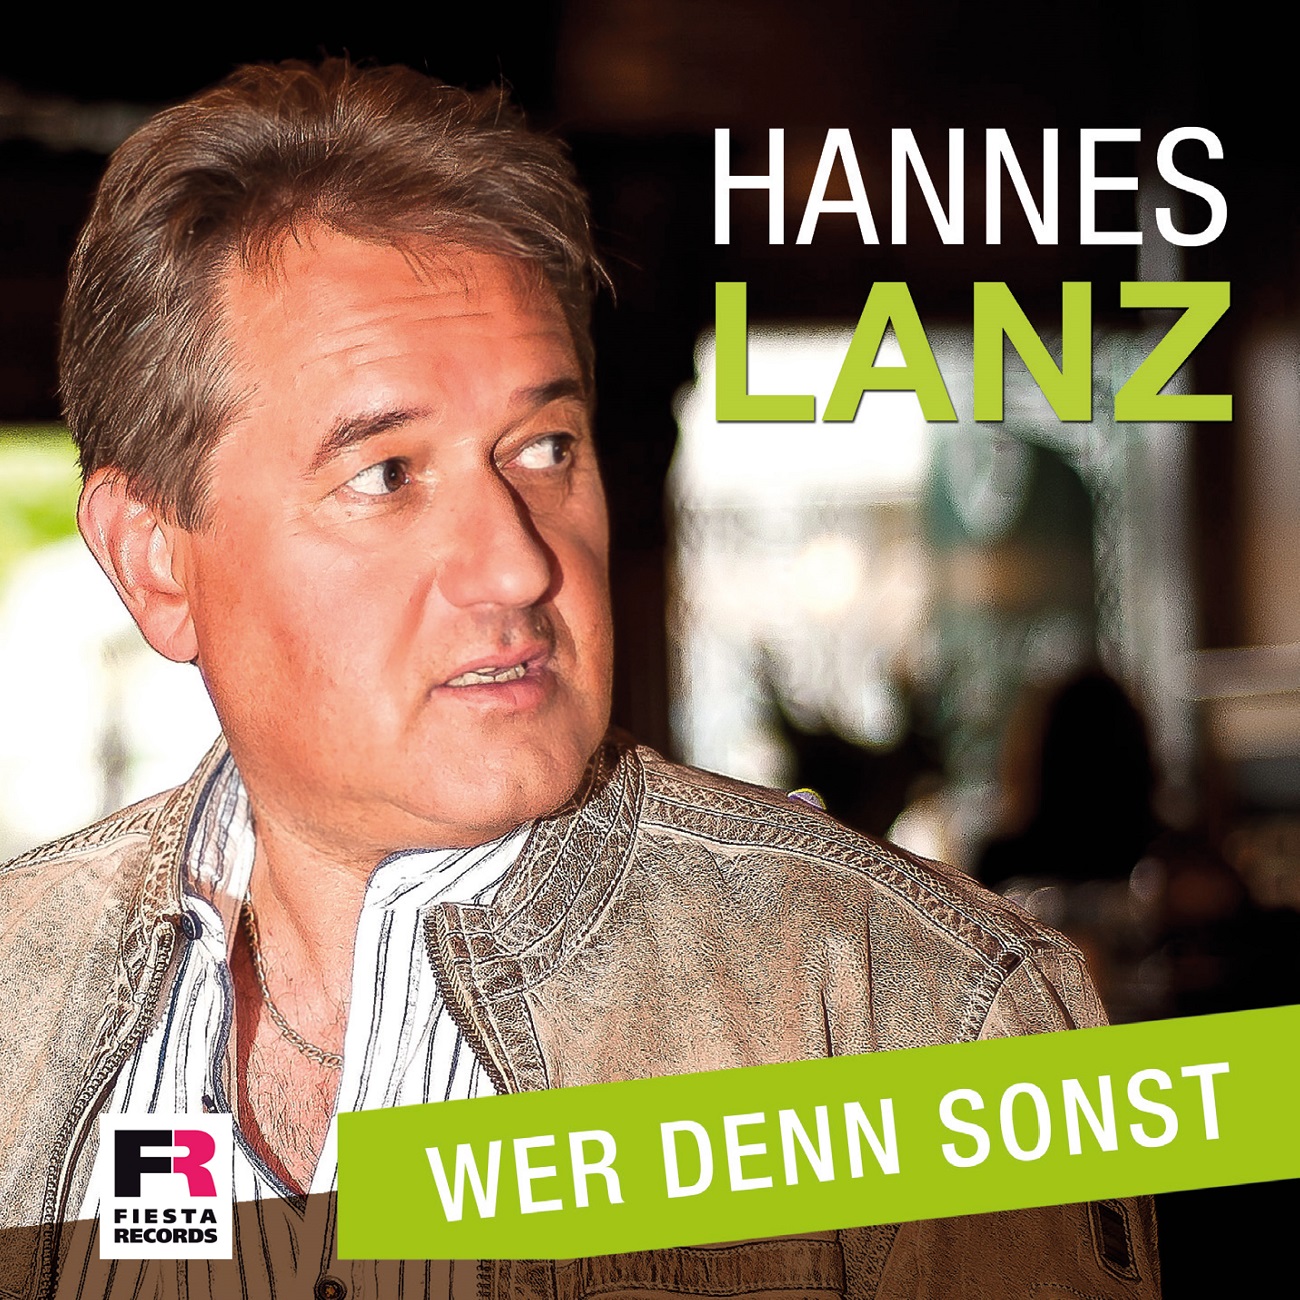 HannesLanz_Werdennsonst_Onlinecover1.jpg